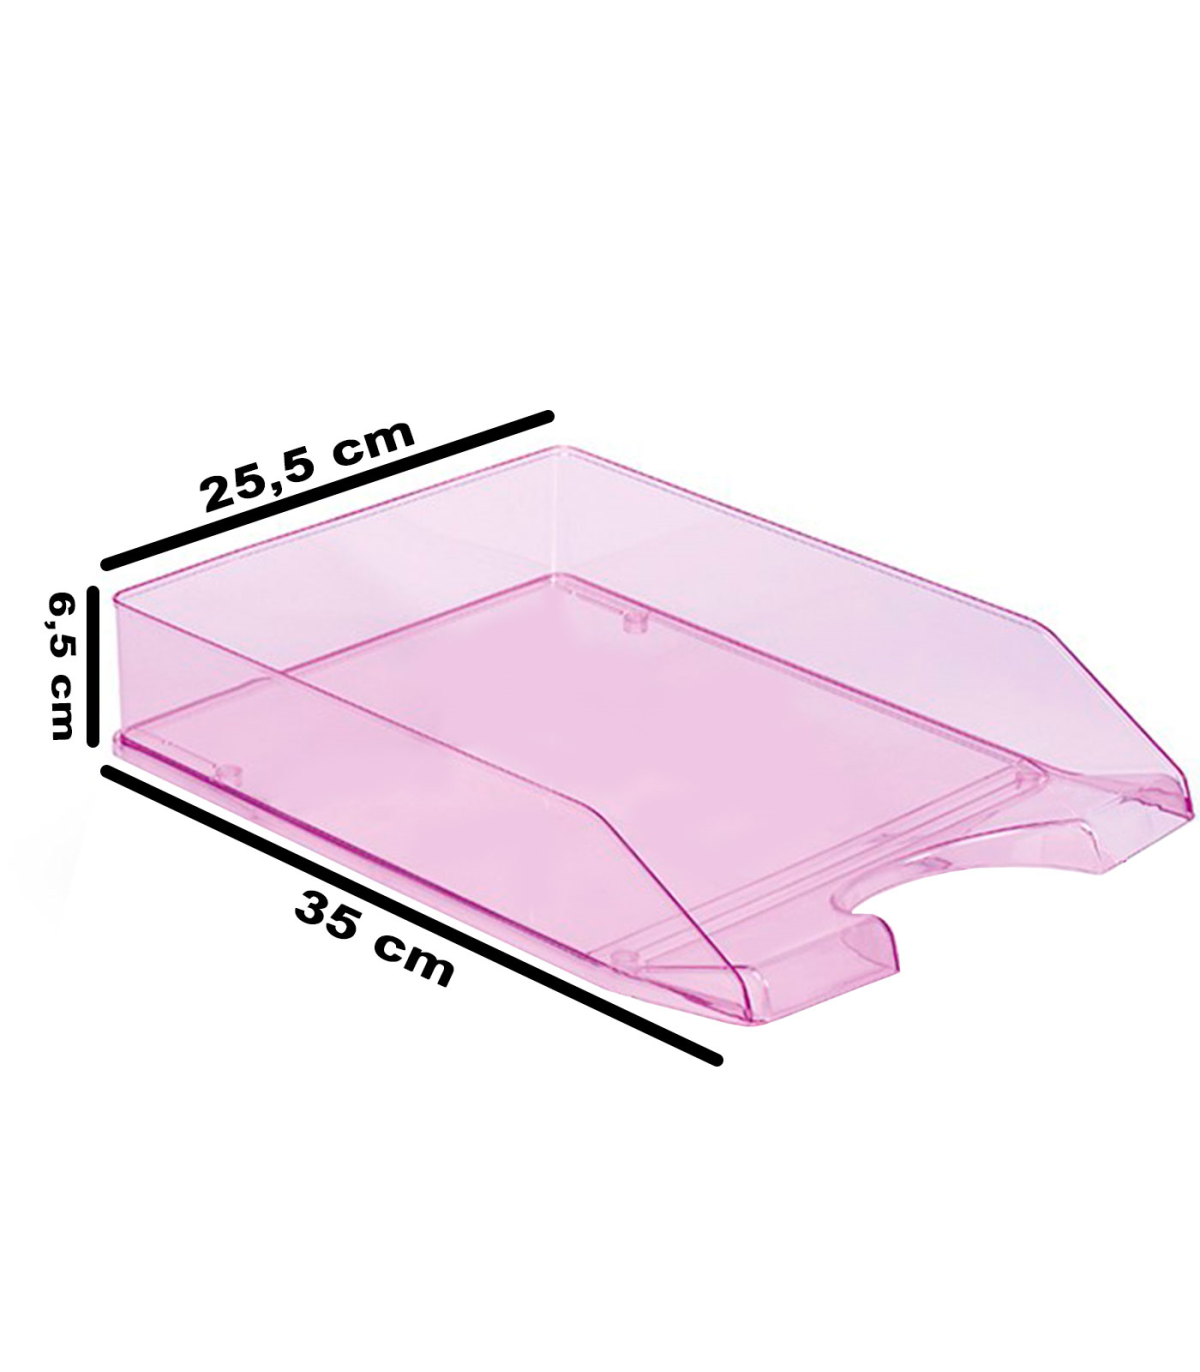 Tradineur - Bandeja rectangular para frigorífico, color aleatorio,  capacidad 3 litros, 6,5 x 30,5 x 23 cm.